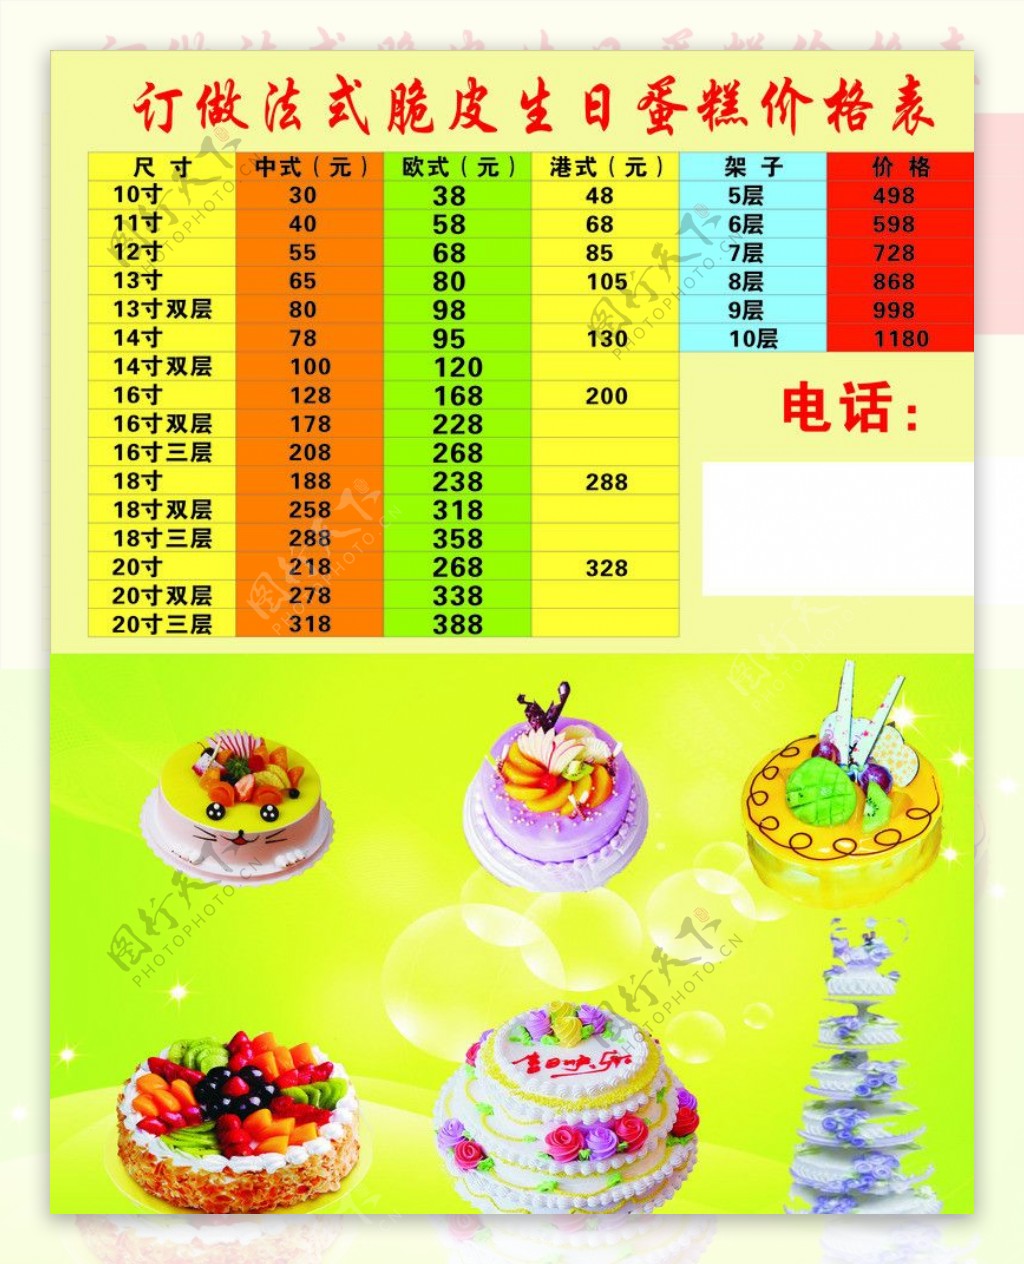 法式脆皮蛋糕六层蛋糕三层蛋糕价格表绿底图片